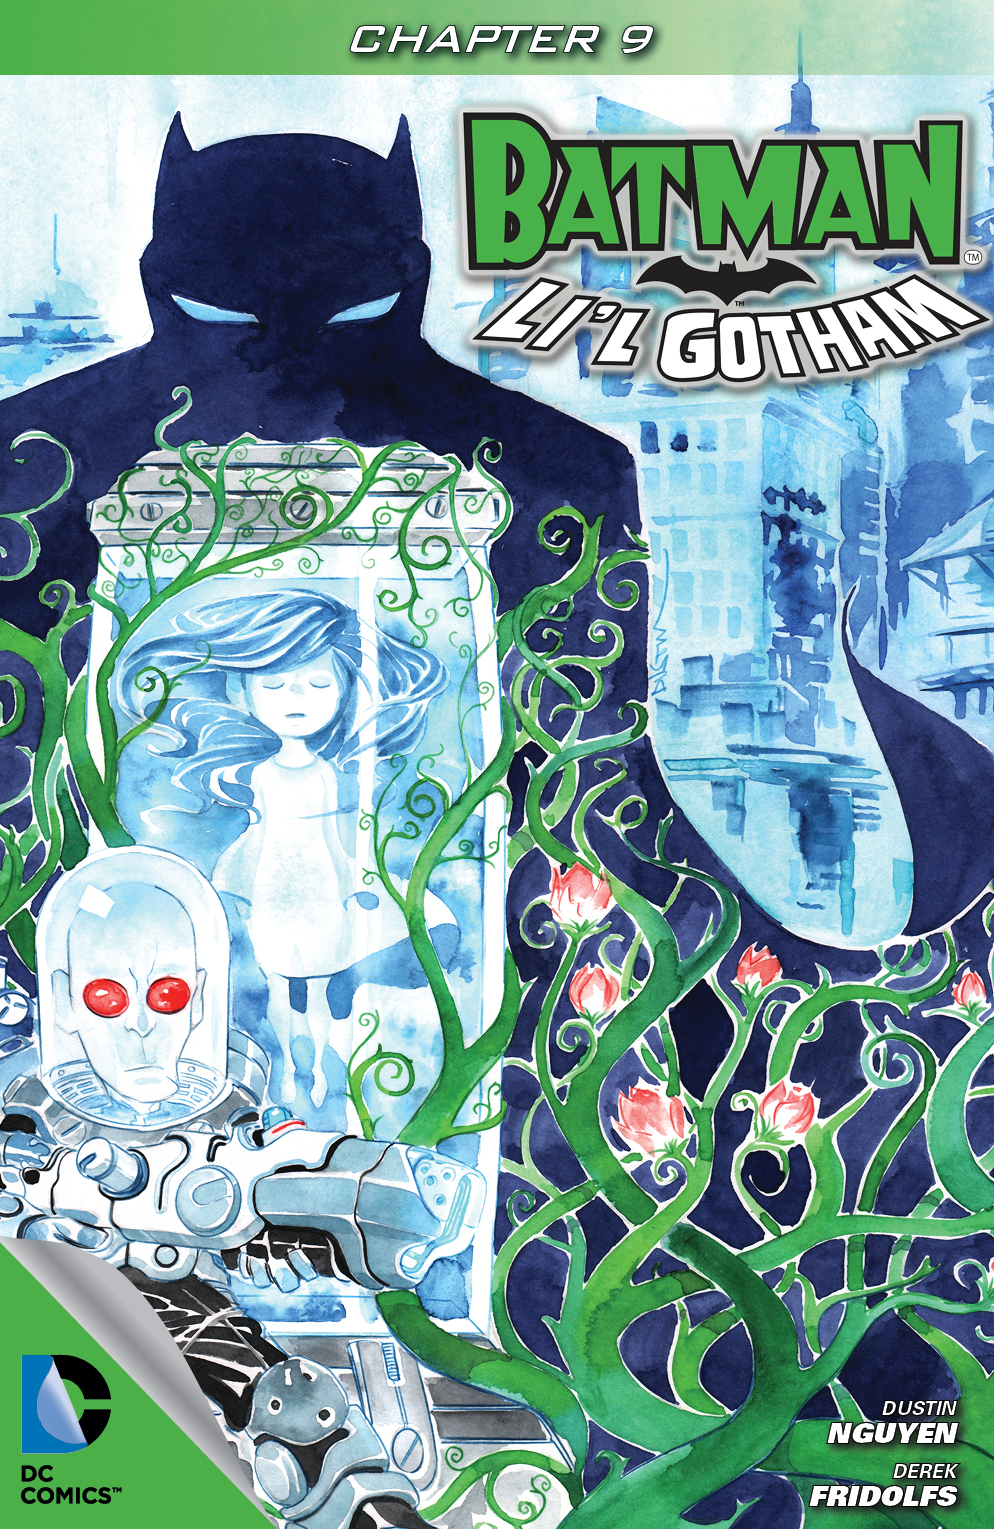 Batman: Li'l Gotham #9 preview images